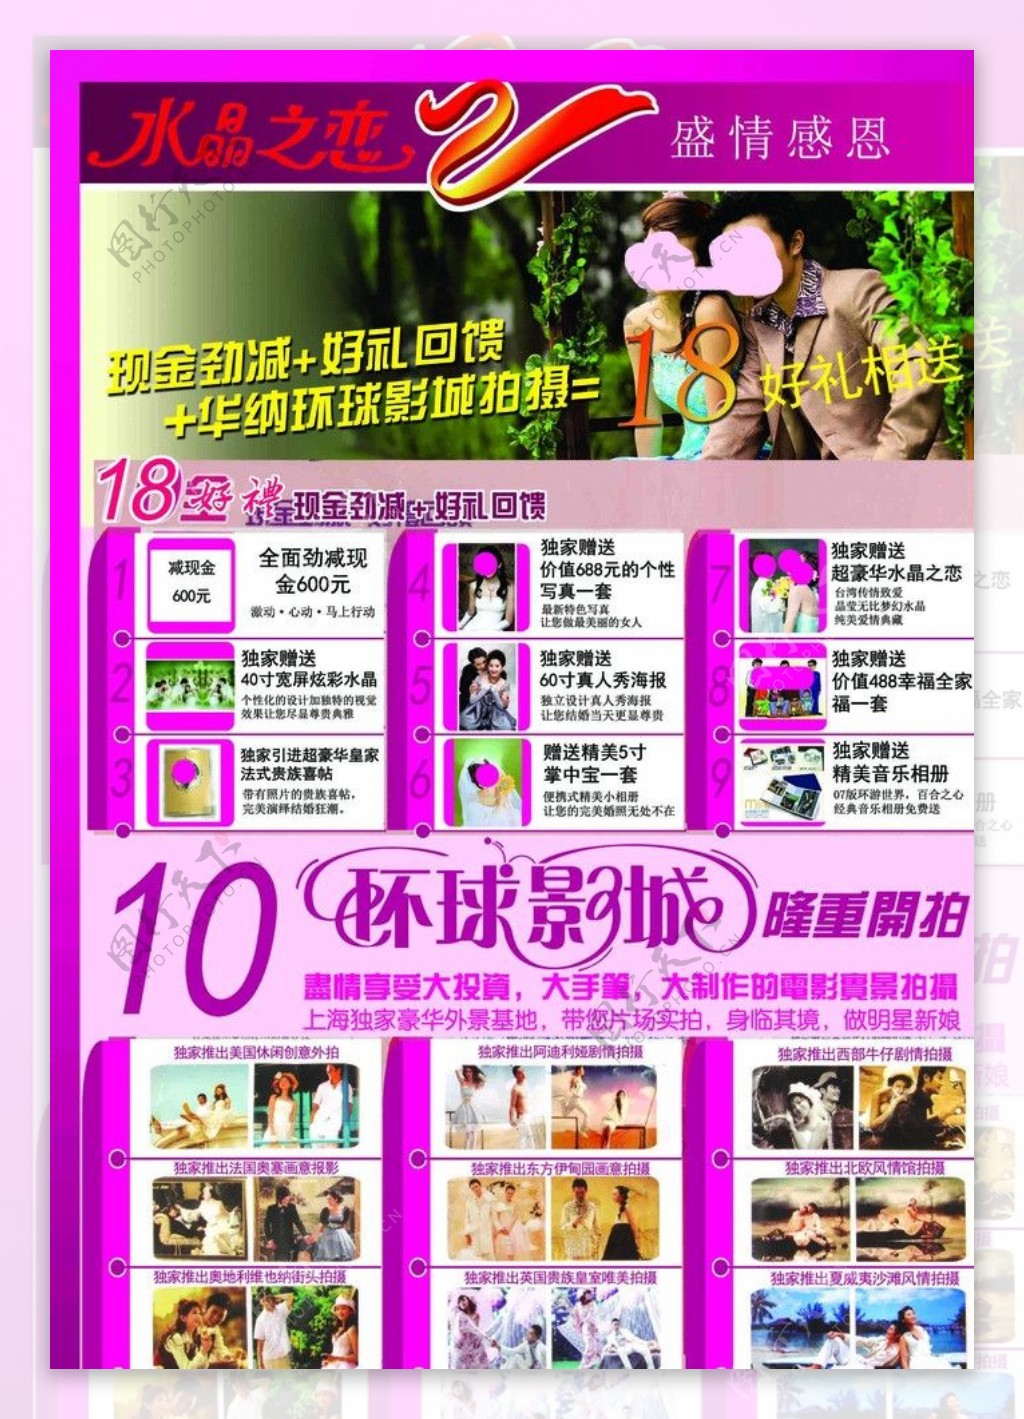 婚纱摄影周年店庆宣传海报图片